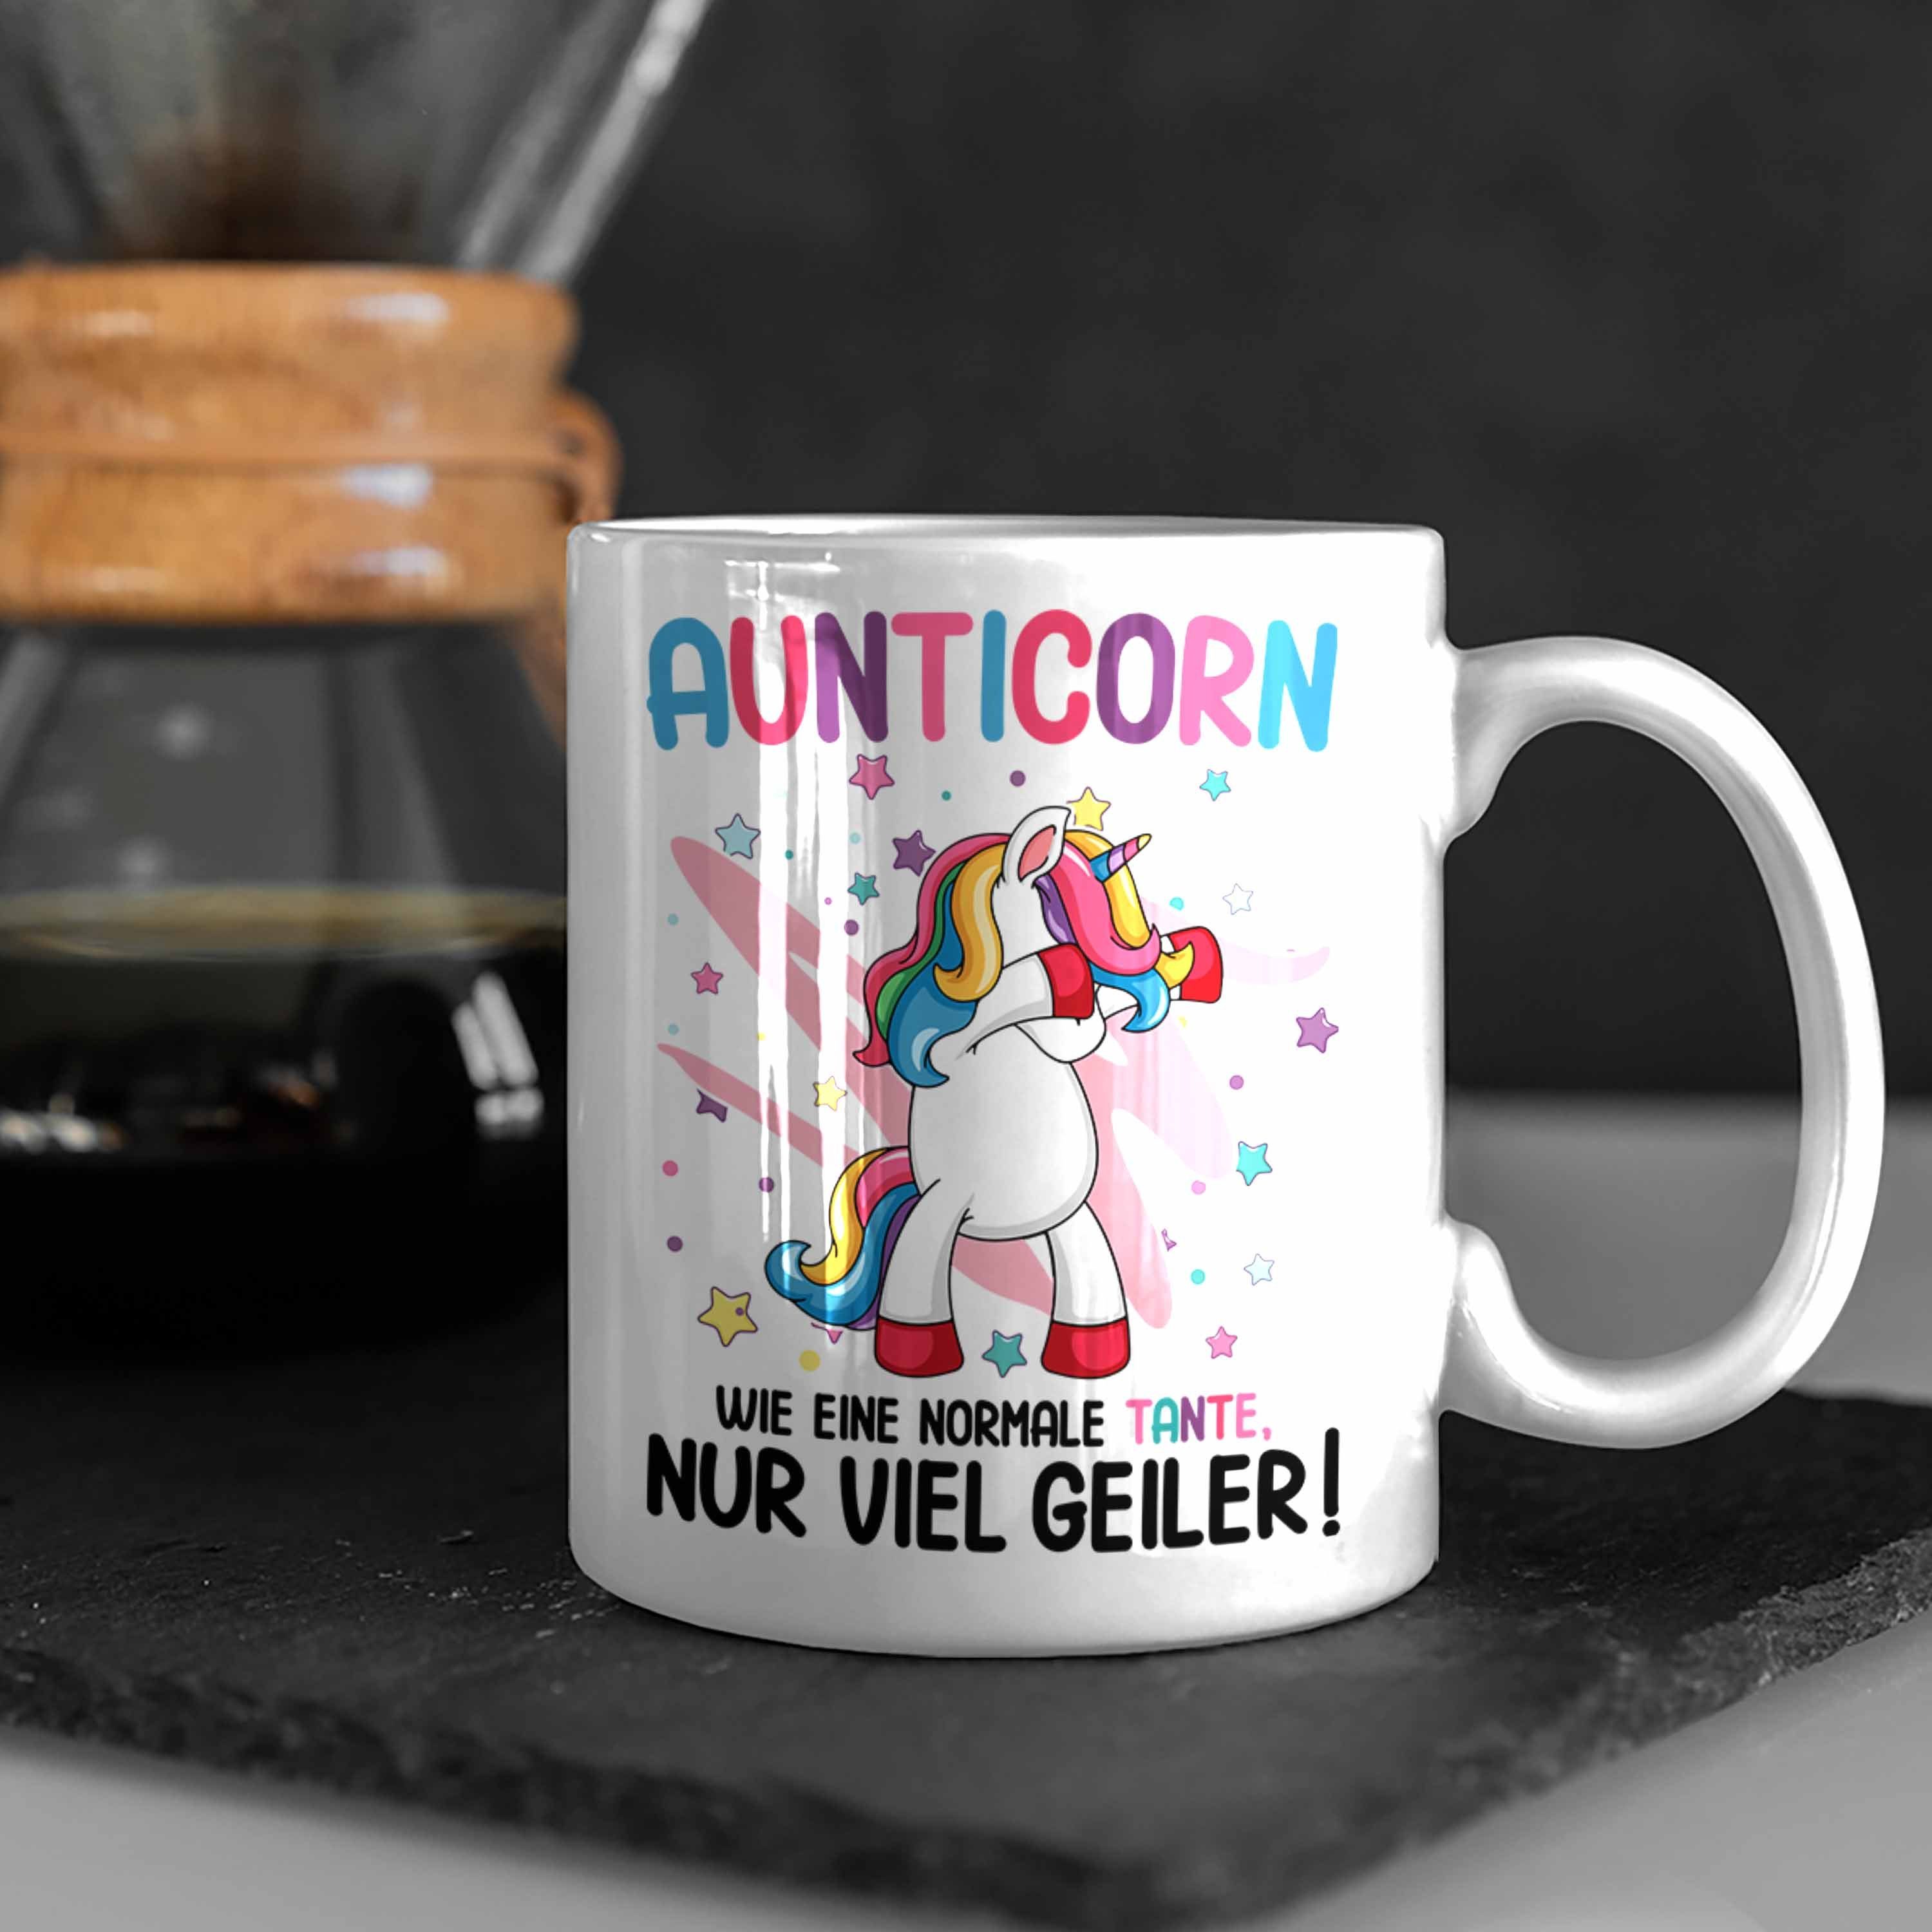 Trendation Tasse Trendation - Beste Spruch Normale Tante Einhorn Eine Aunticorn Lustig Wie Geschenk Geburtstag Weiss Tante